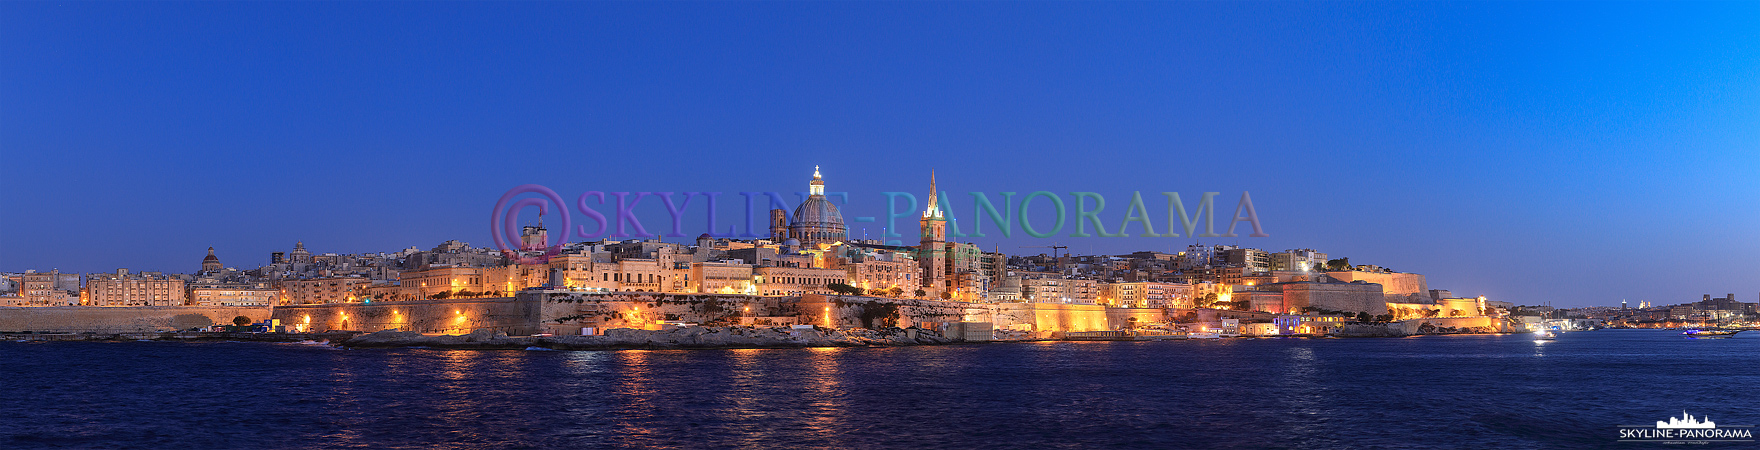 Skyline Panorama – Valletta Malta (p_00921)